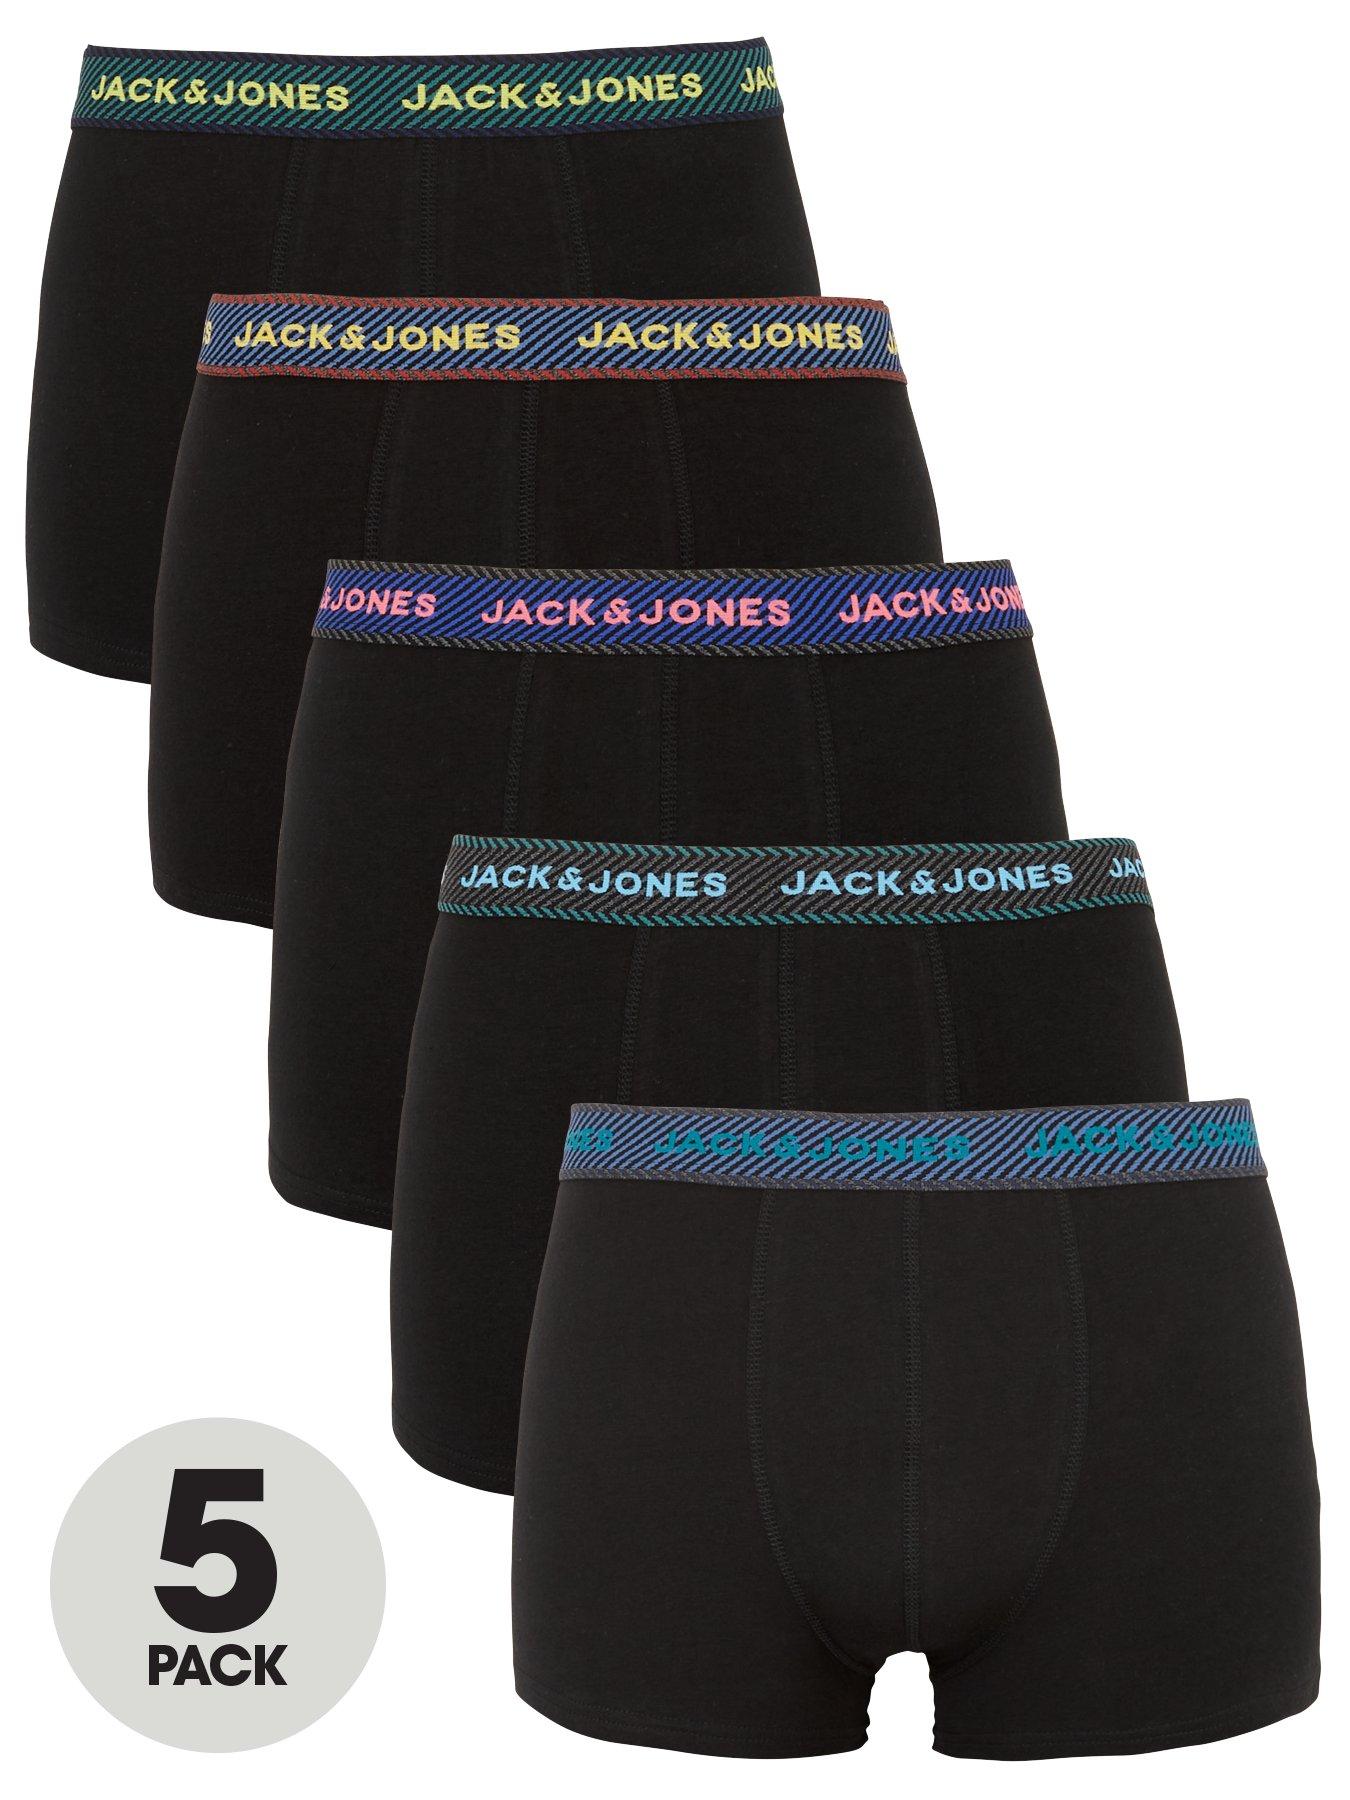 Jack & Jones Socks discount 75% MEN FASHION Underwear & Nightwear Multicolored Single 